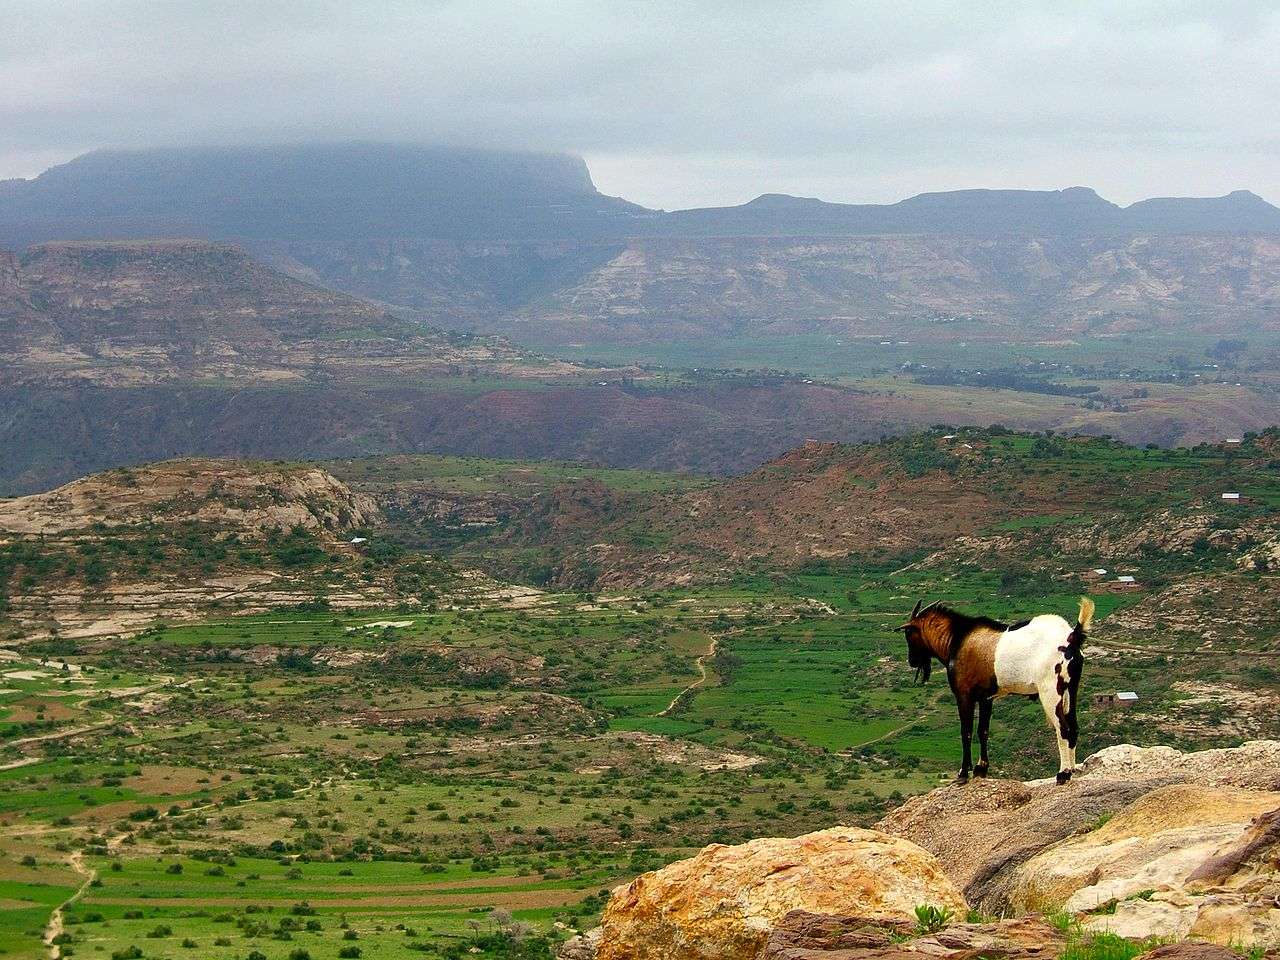 Vue des hauts plateaux éthiopiens. Les chercheurs ont étudié le génome de la population de cette région qui a subi au cours des millénaires d’importants changements physiologiques et génétiques affectant leurs systèmes respiratoires et sanguins. © Andro96, licence CC BY-SA 2.0